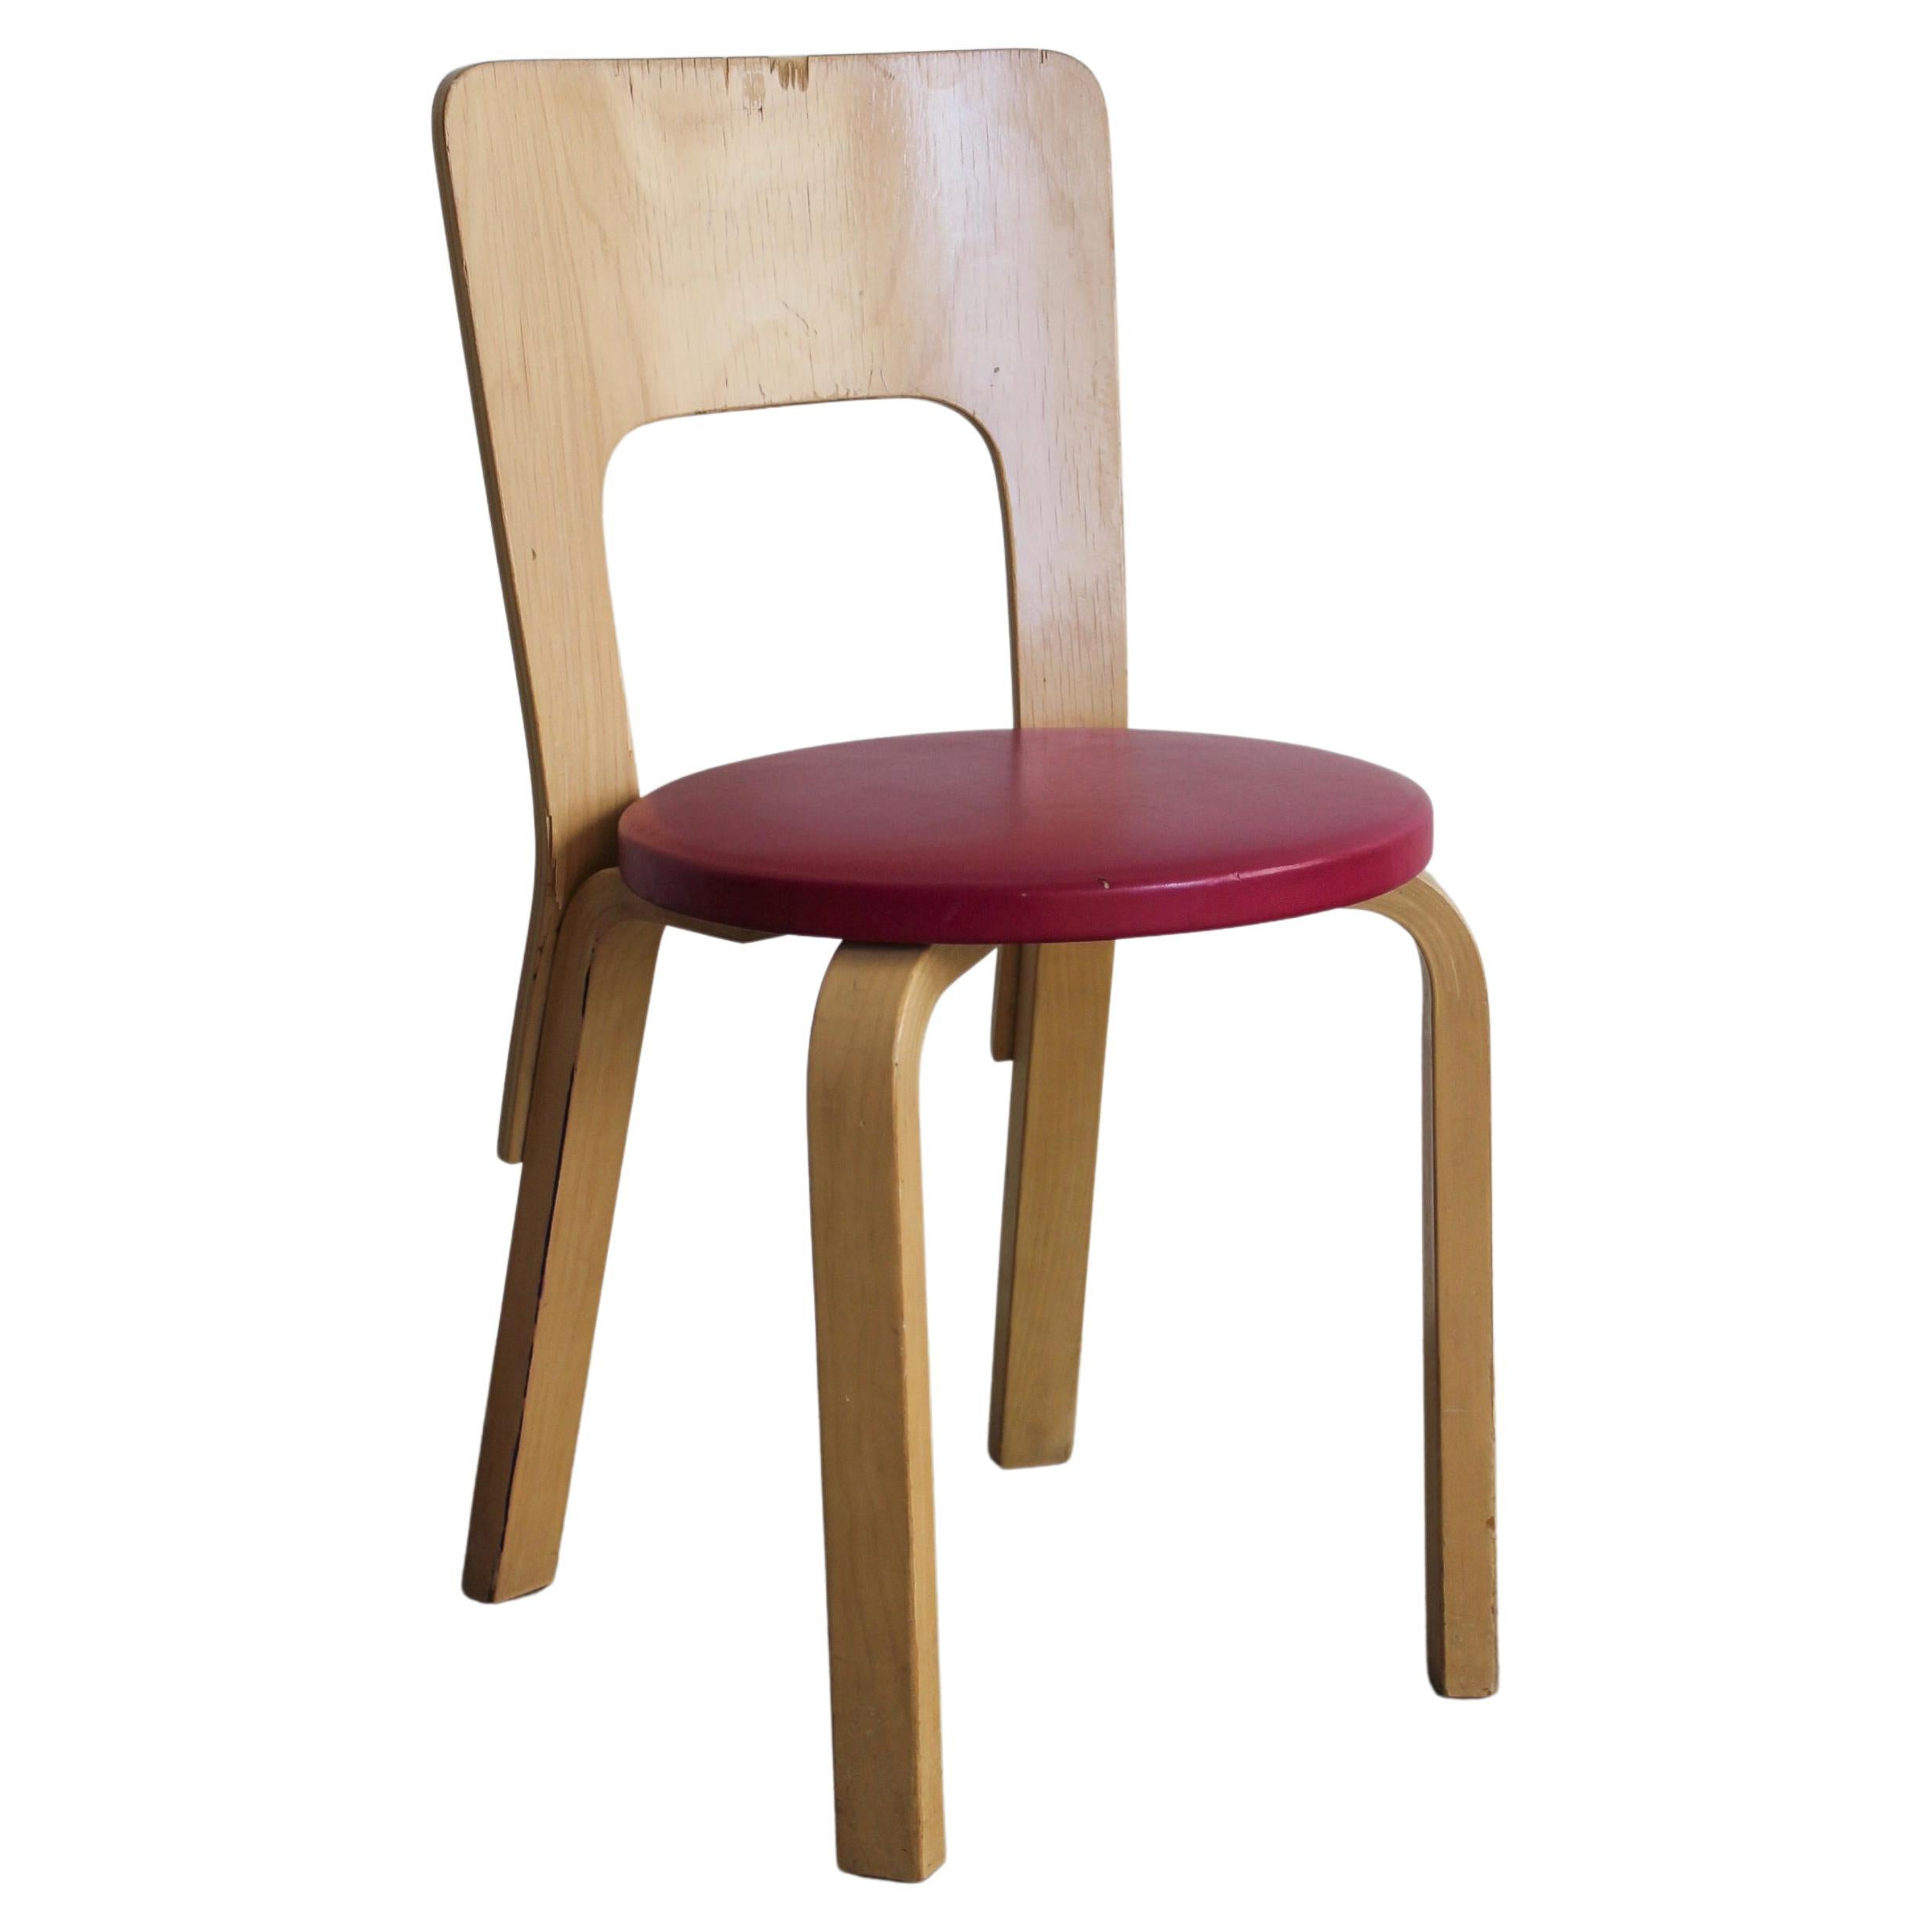 Model 66 Chair by Alvar Aalto for Artek For Sale